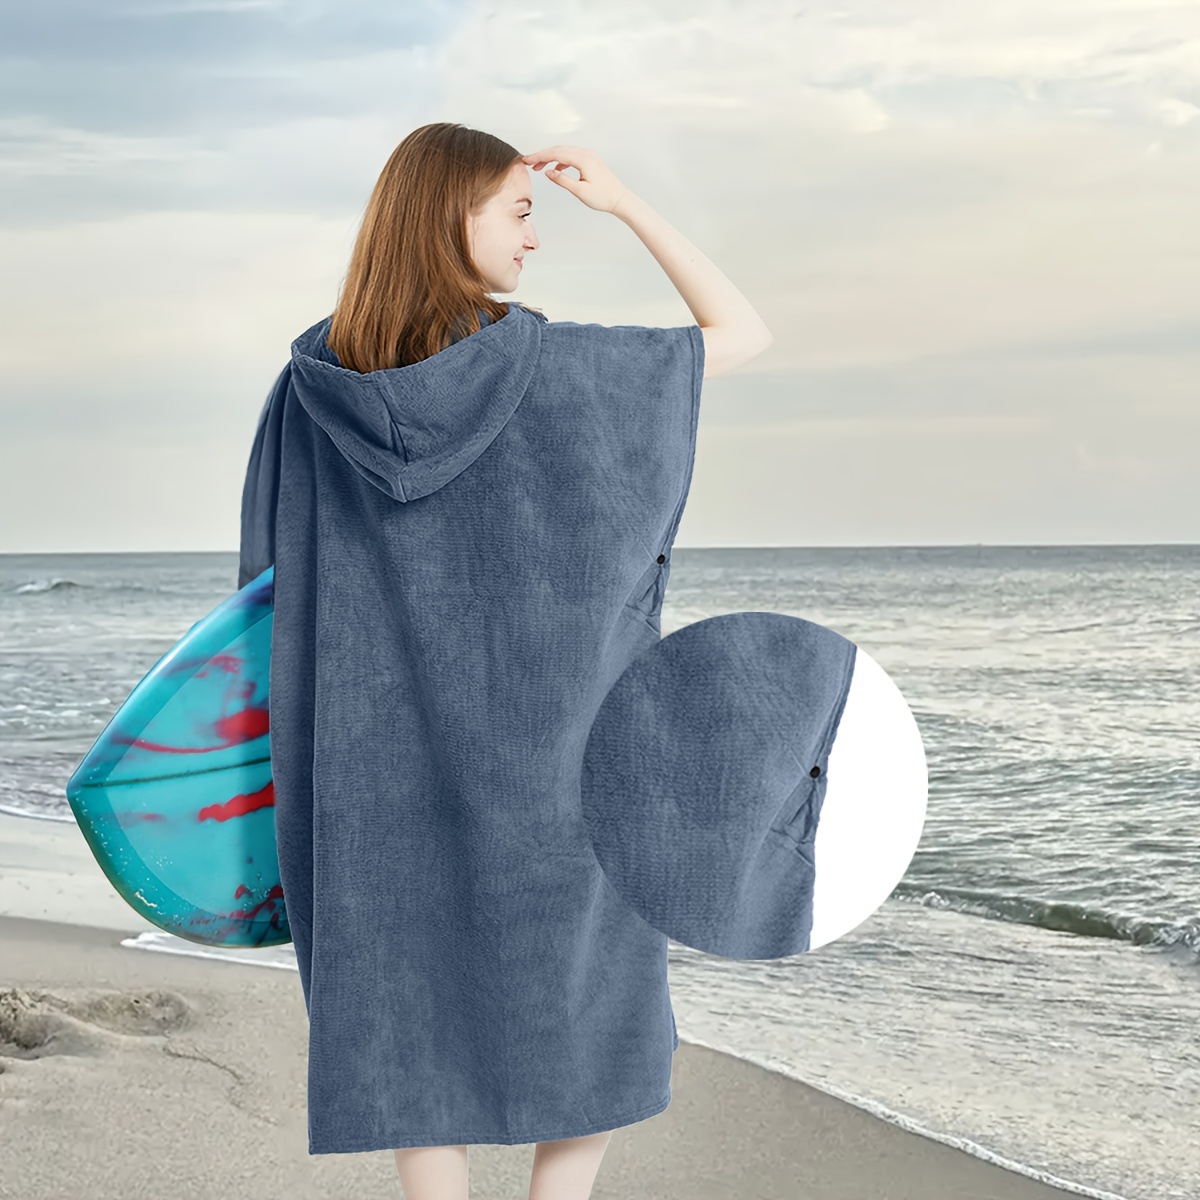 SEASHORE TREE Toalla de playa con capucha, toalla de natación, bata para  adultos, poncho de surf de secado rápido para mujeres y hombres, azul lago